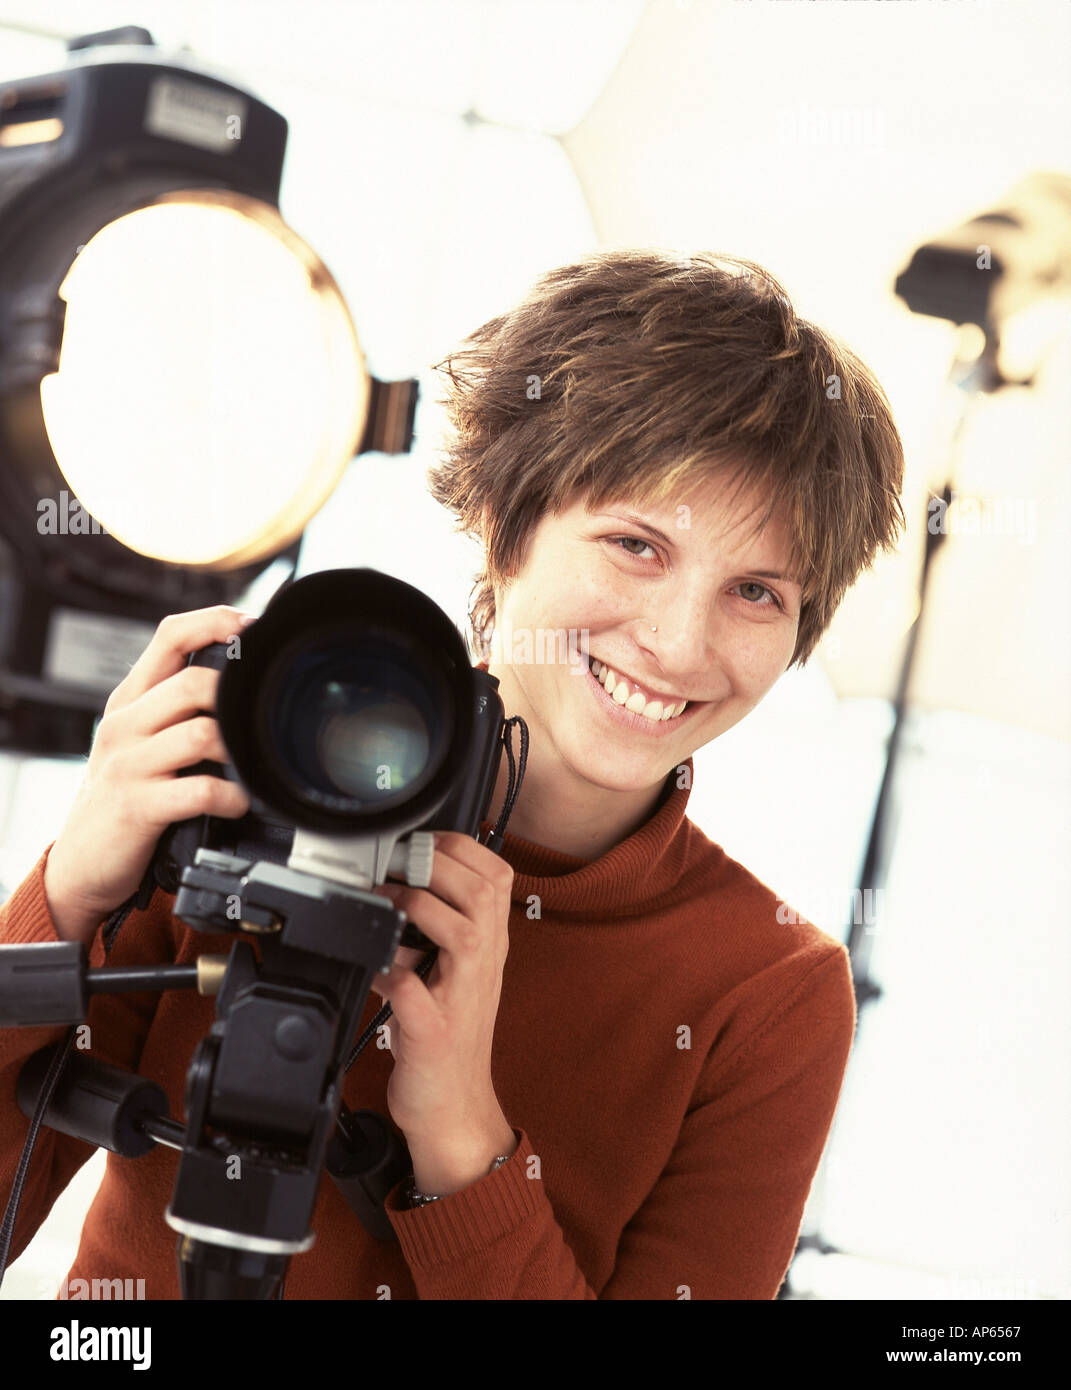 Giovane fotografo con il cavalletto montato fotocamera reflex e illuminazione professionale Foto Stock